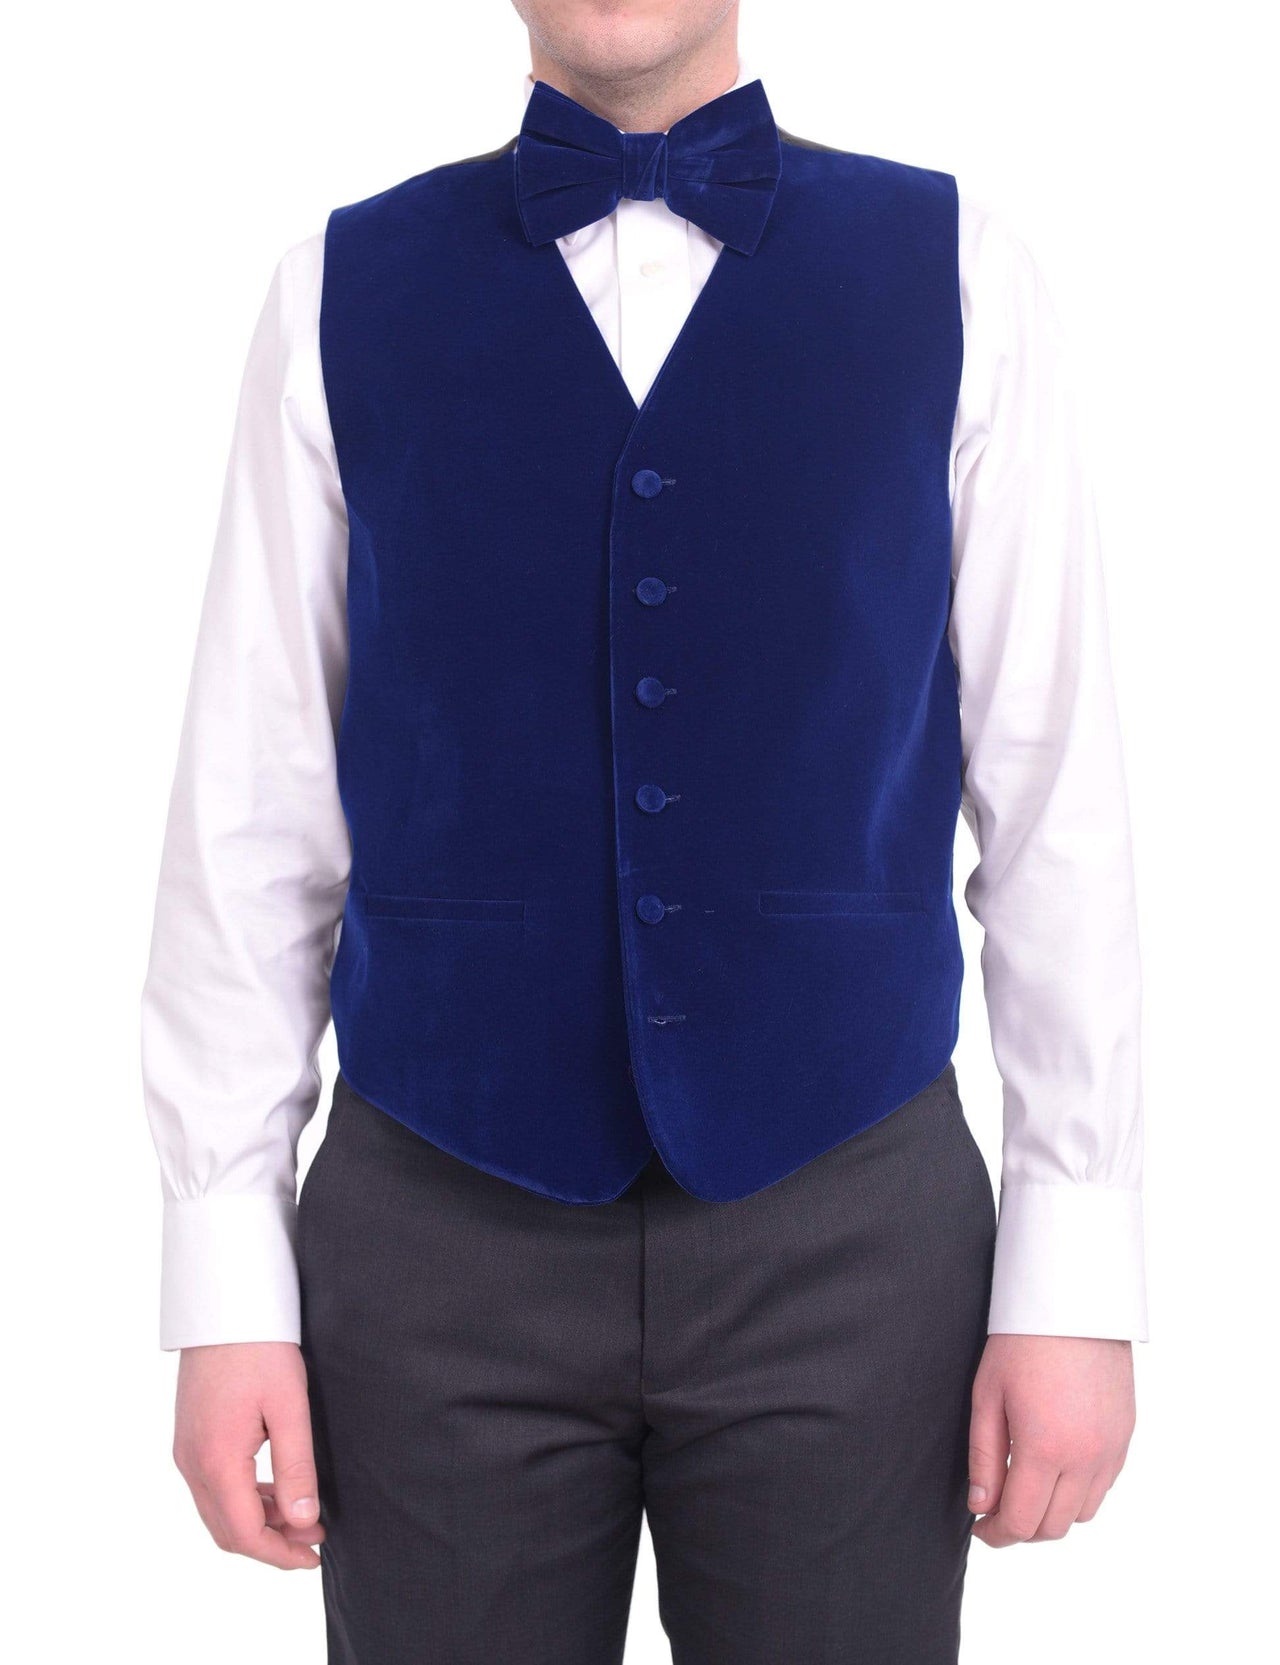 Steven Land Solid Sapphire Blue Velvet Velour Vest With Necktie & Bowtie Set - The Suit Depot